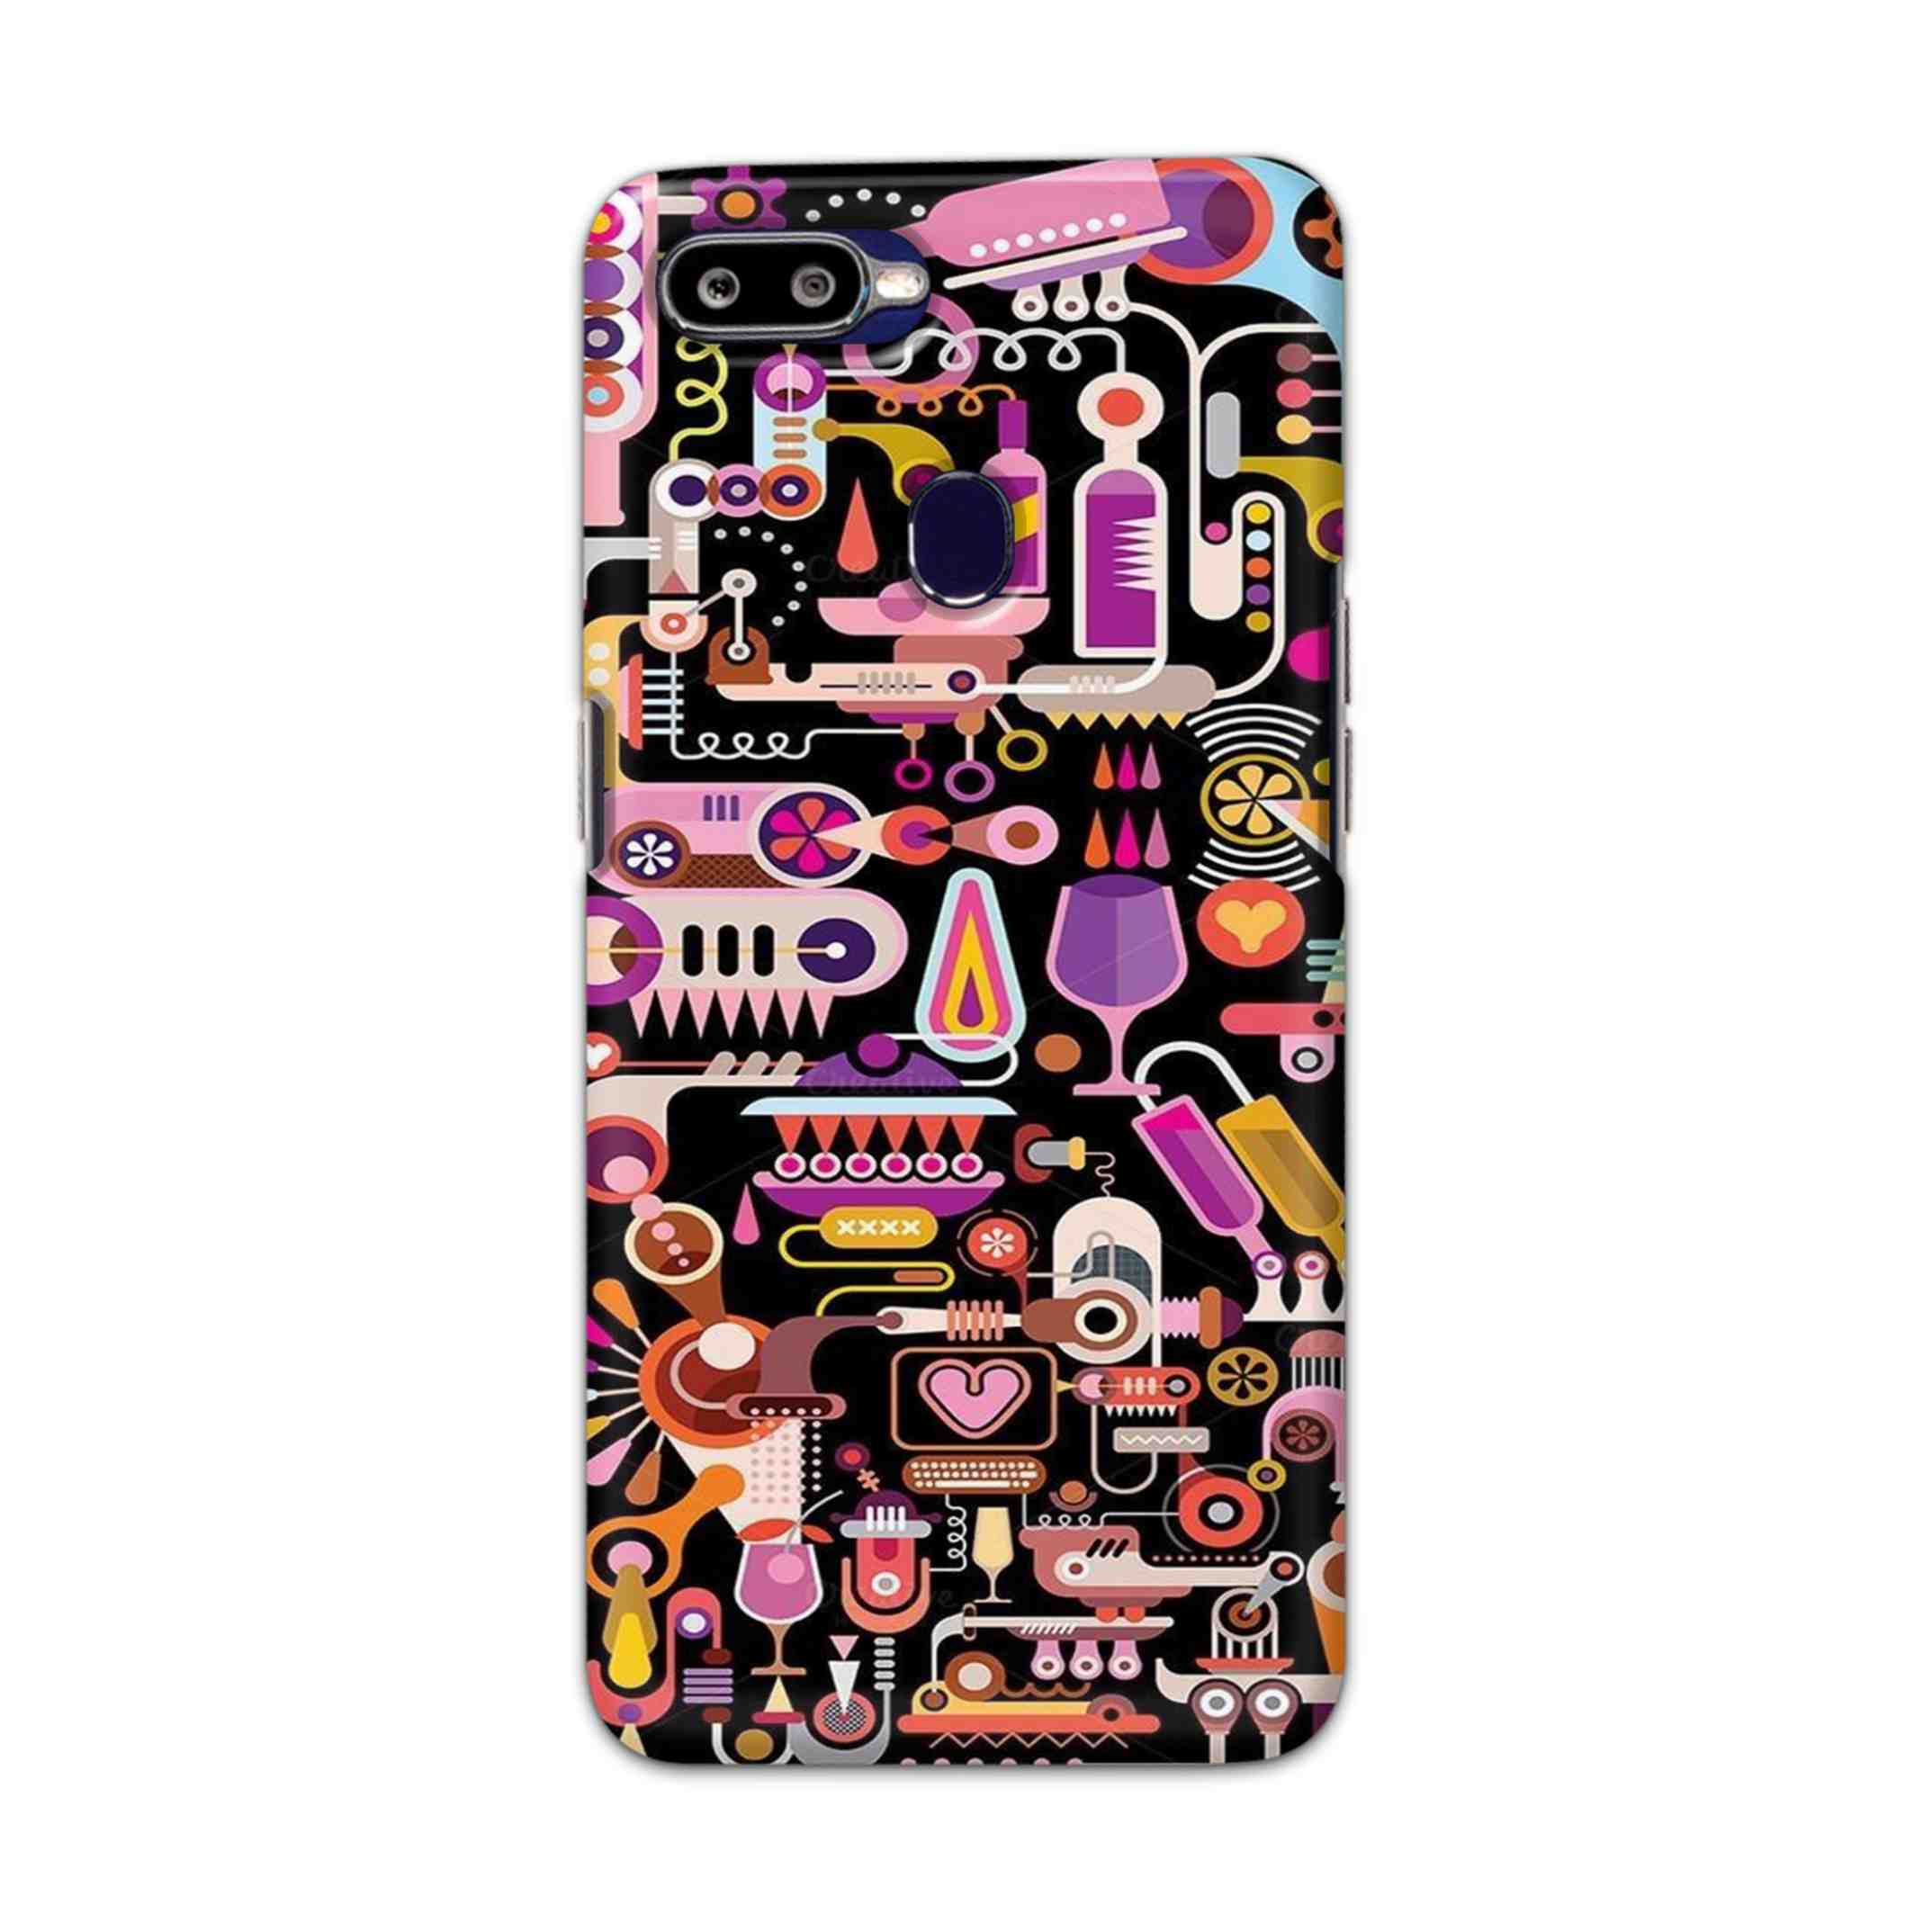 Buy Art Hard Back Mobile Phone Case/Cover For Oppo F9 / F9 Pro Online